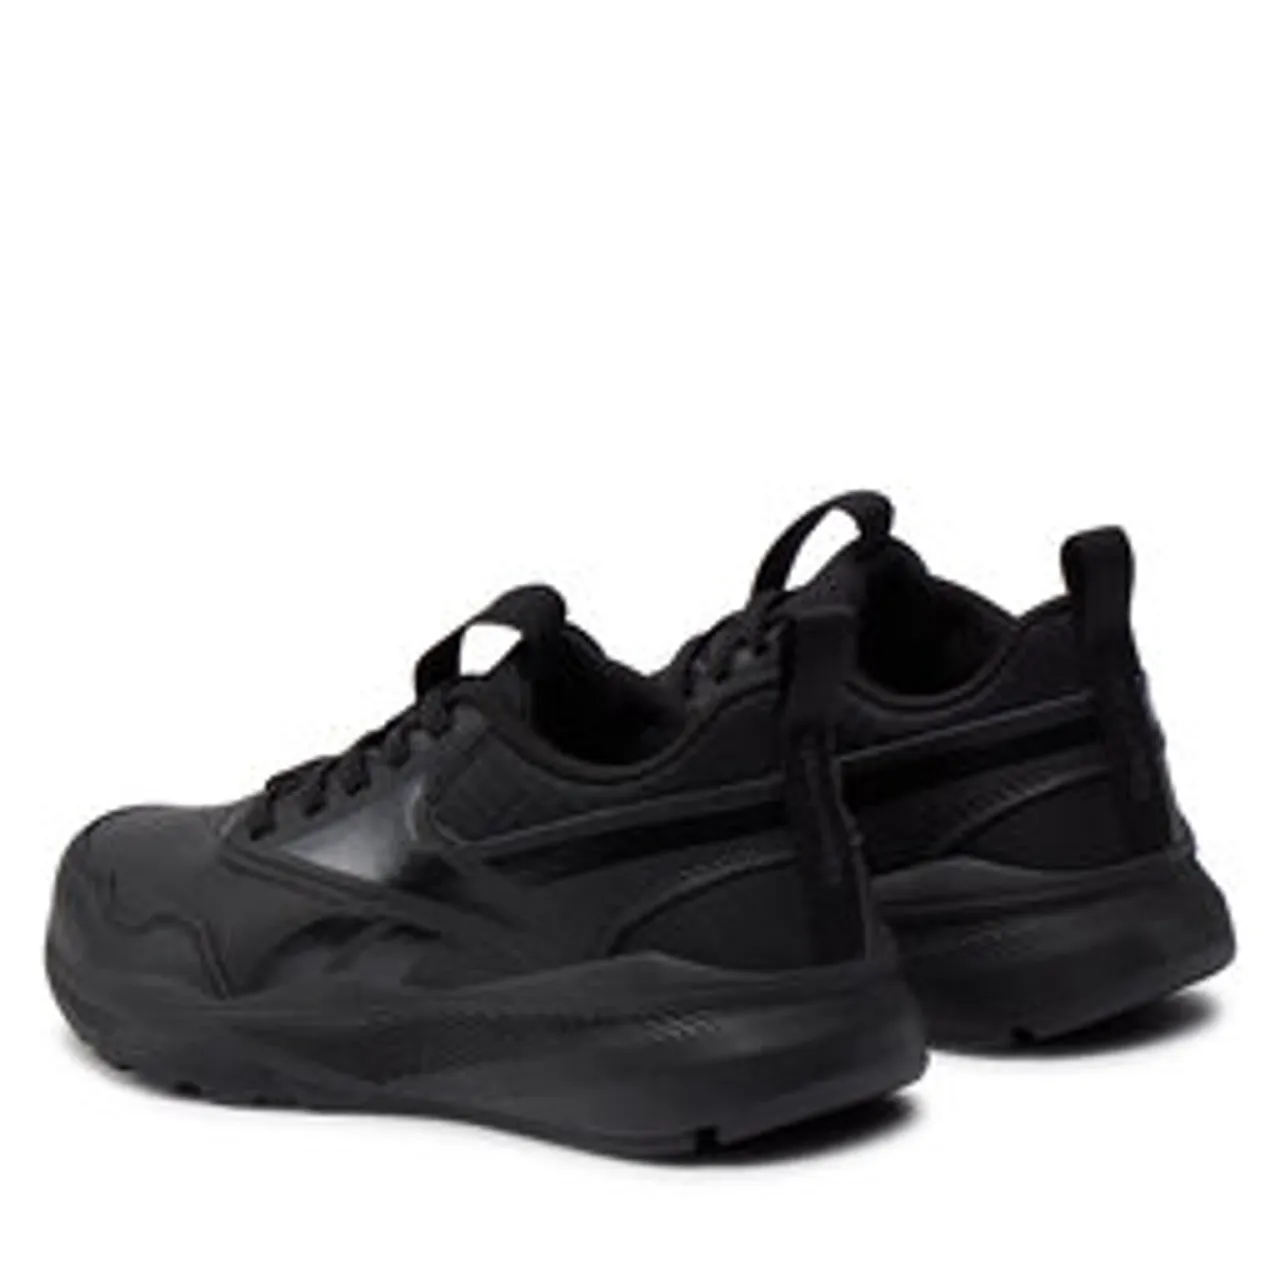 Schuhe Reebok Xt Sprinter 2.0 Al H02853 Black/Black/Black